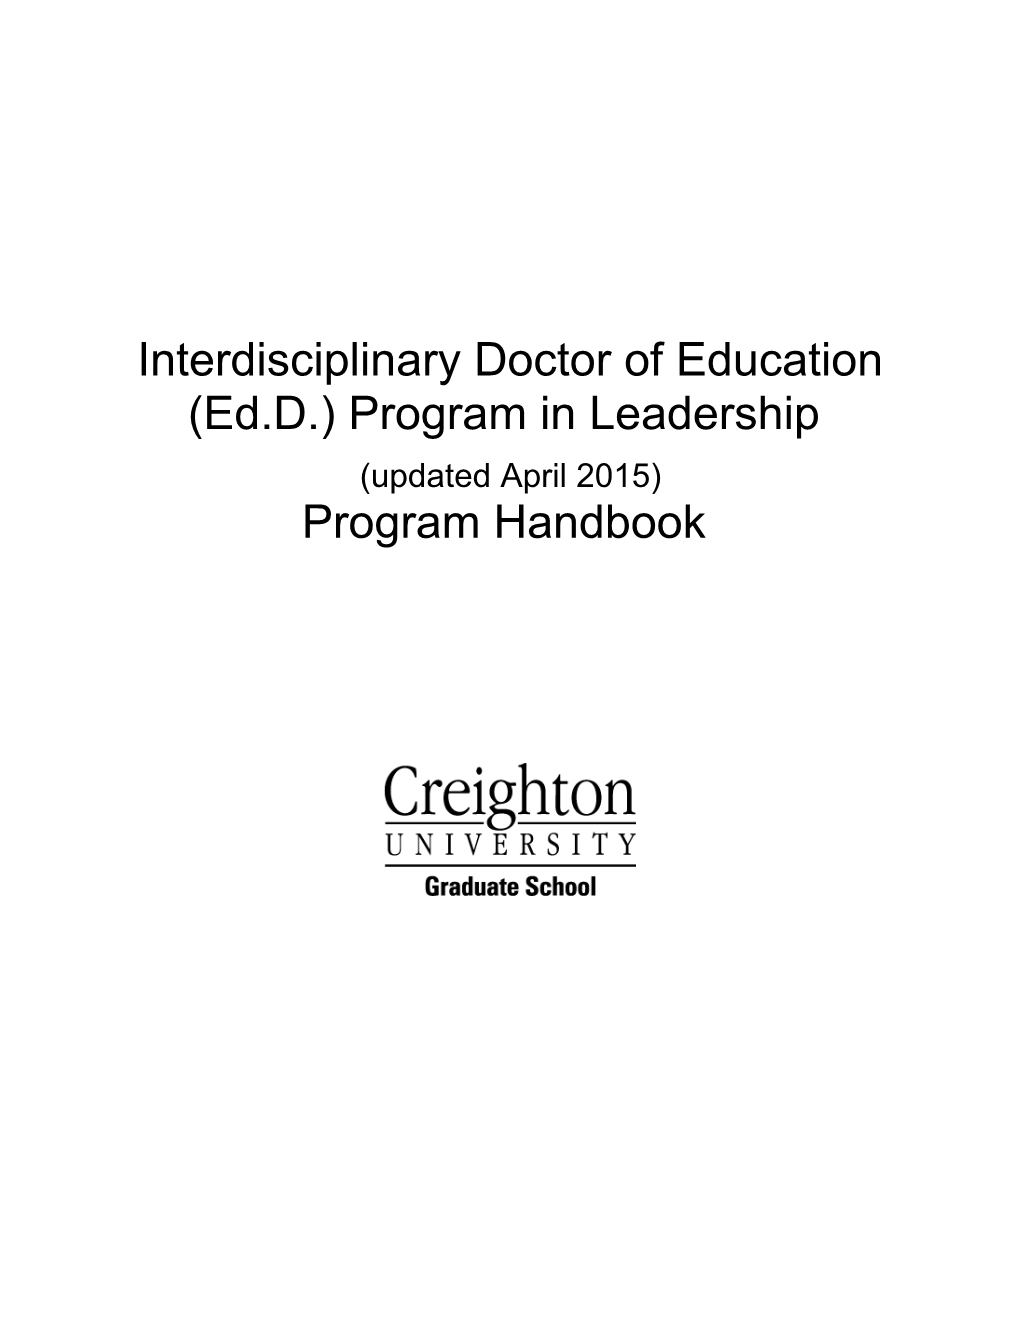 Interdisciplinary Doctor of Education (Ed.D.) Program in Leadership